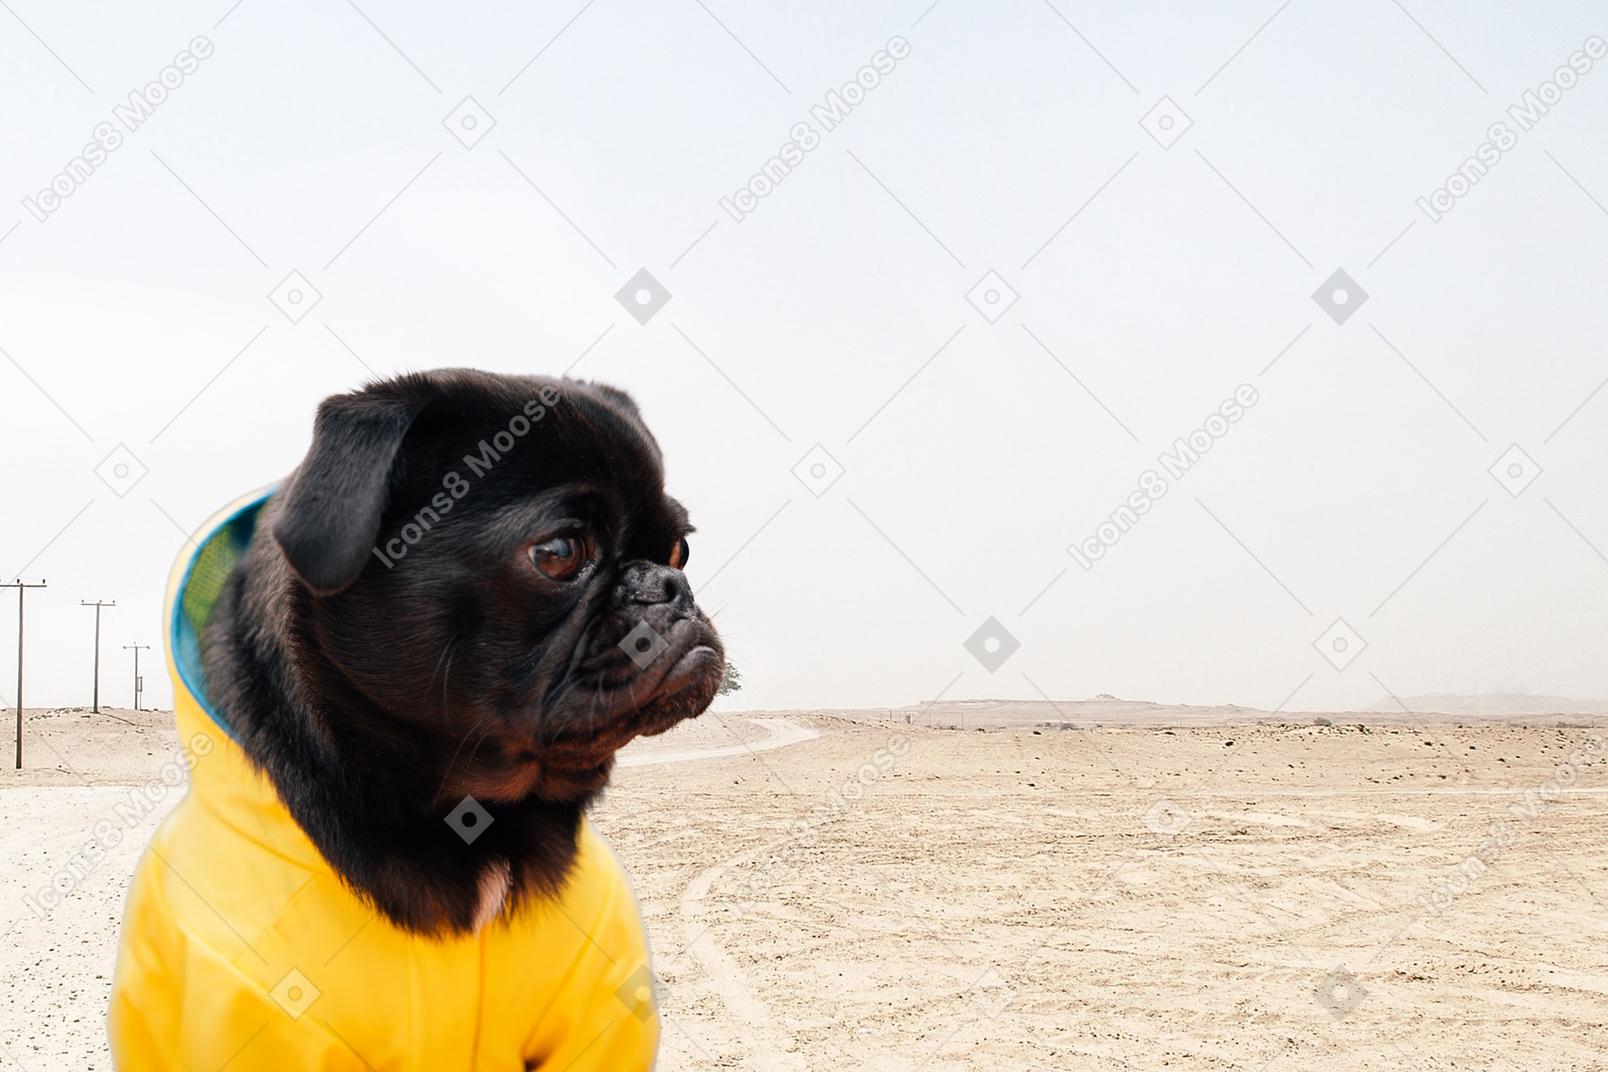 Black pug standing in the desert